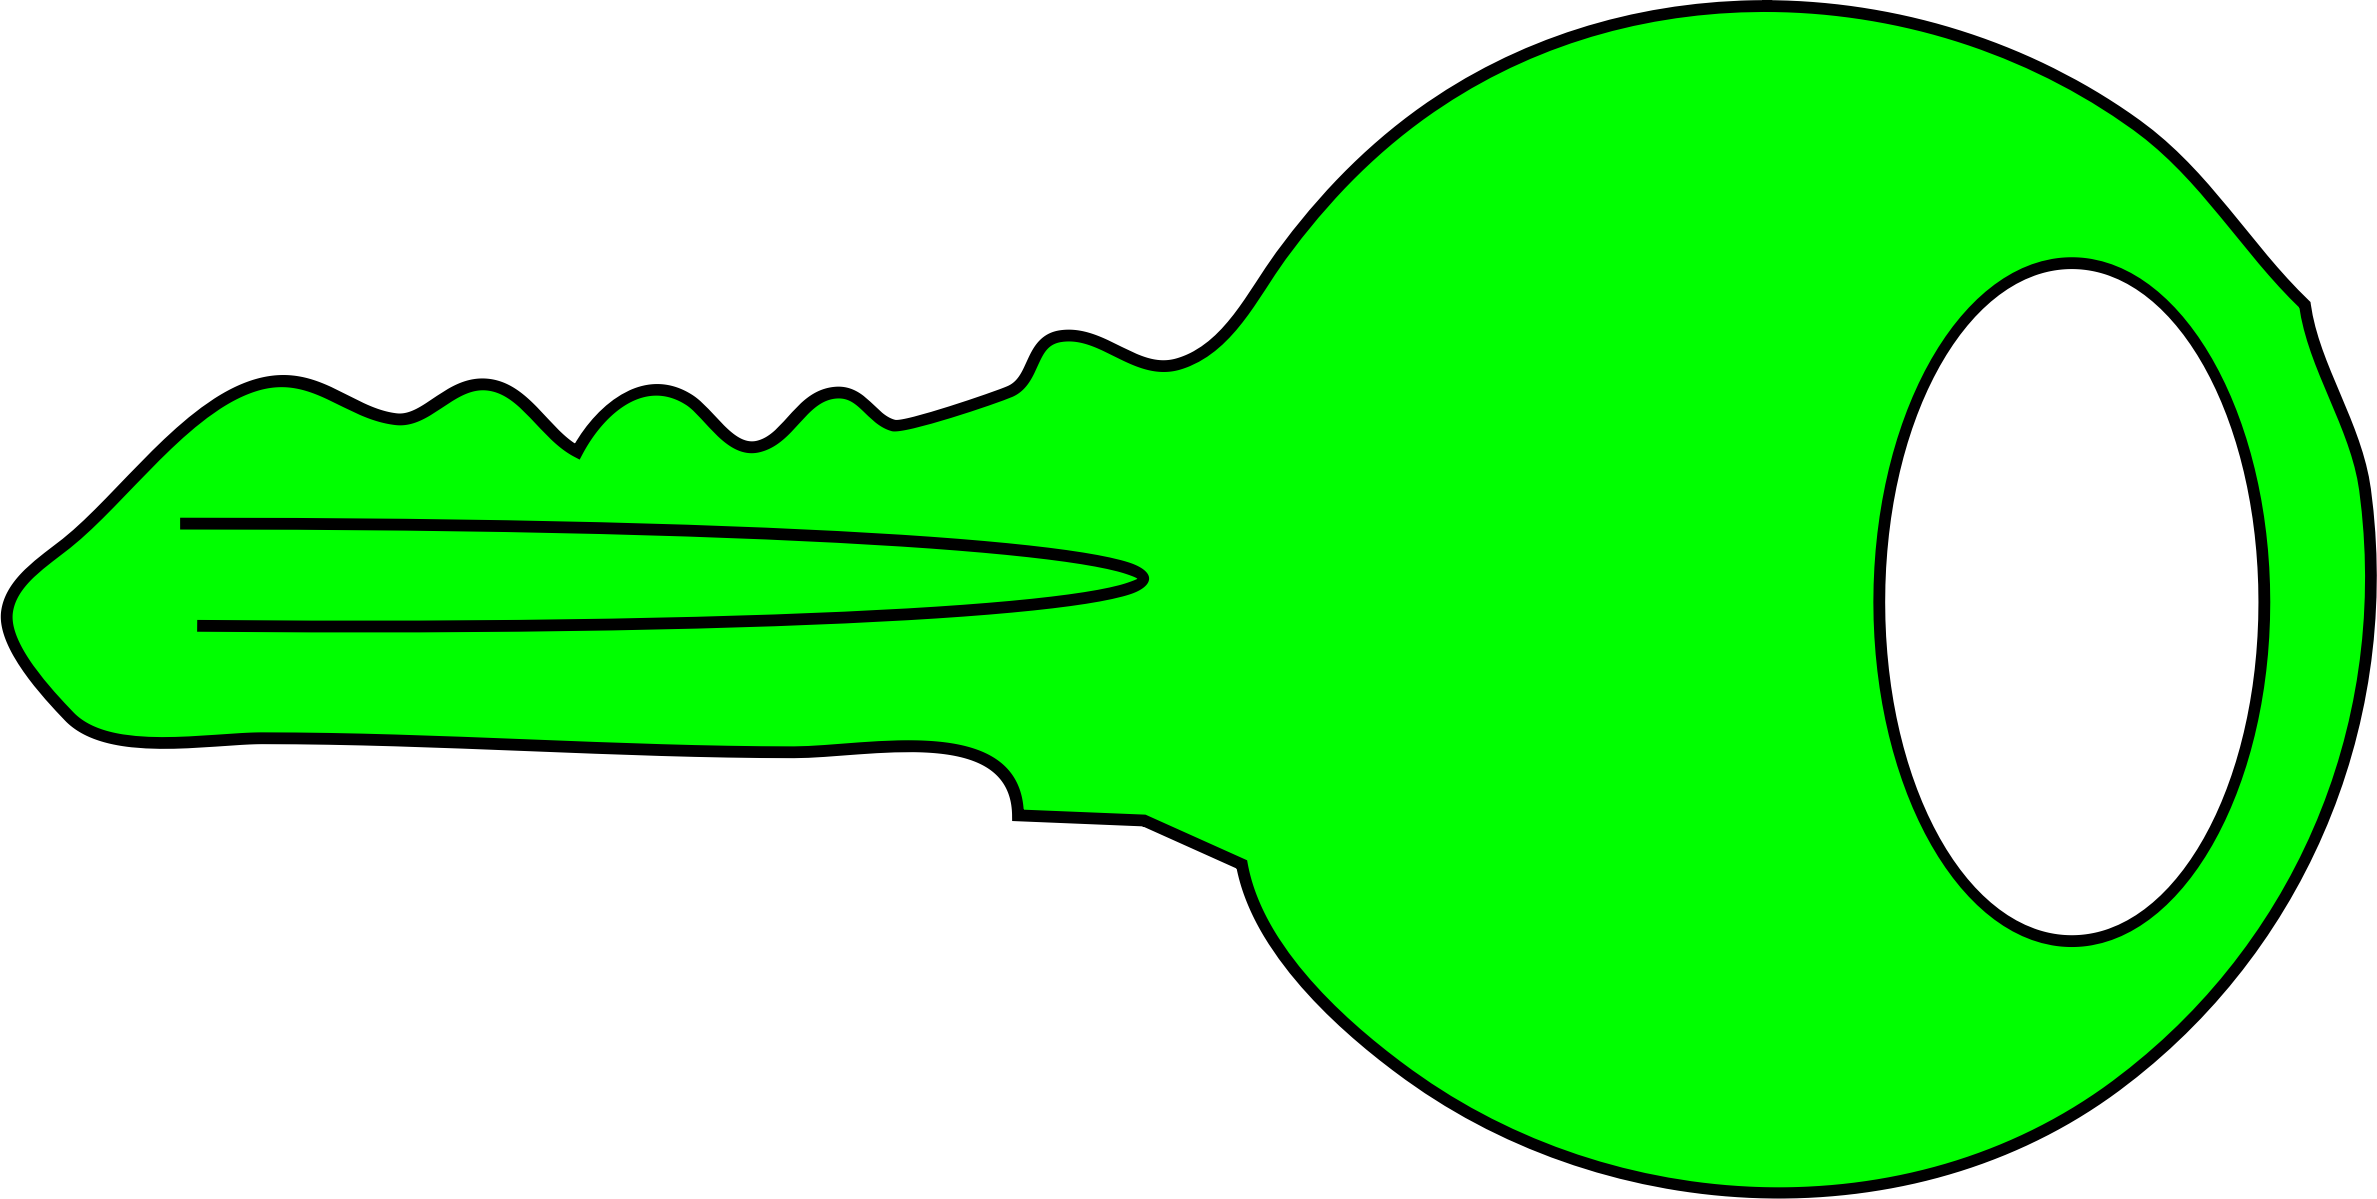 green key clipart - photo #22